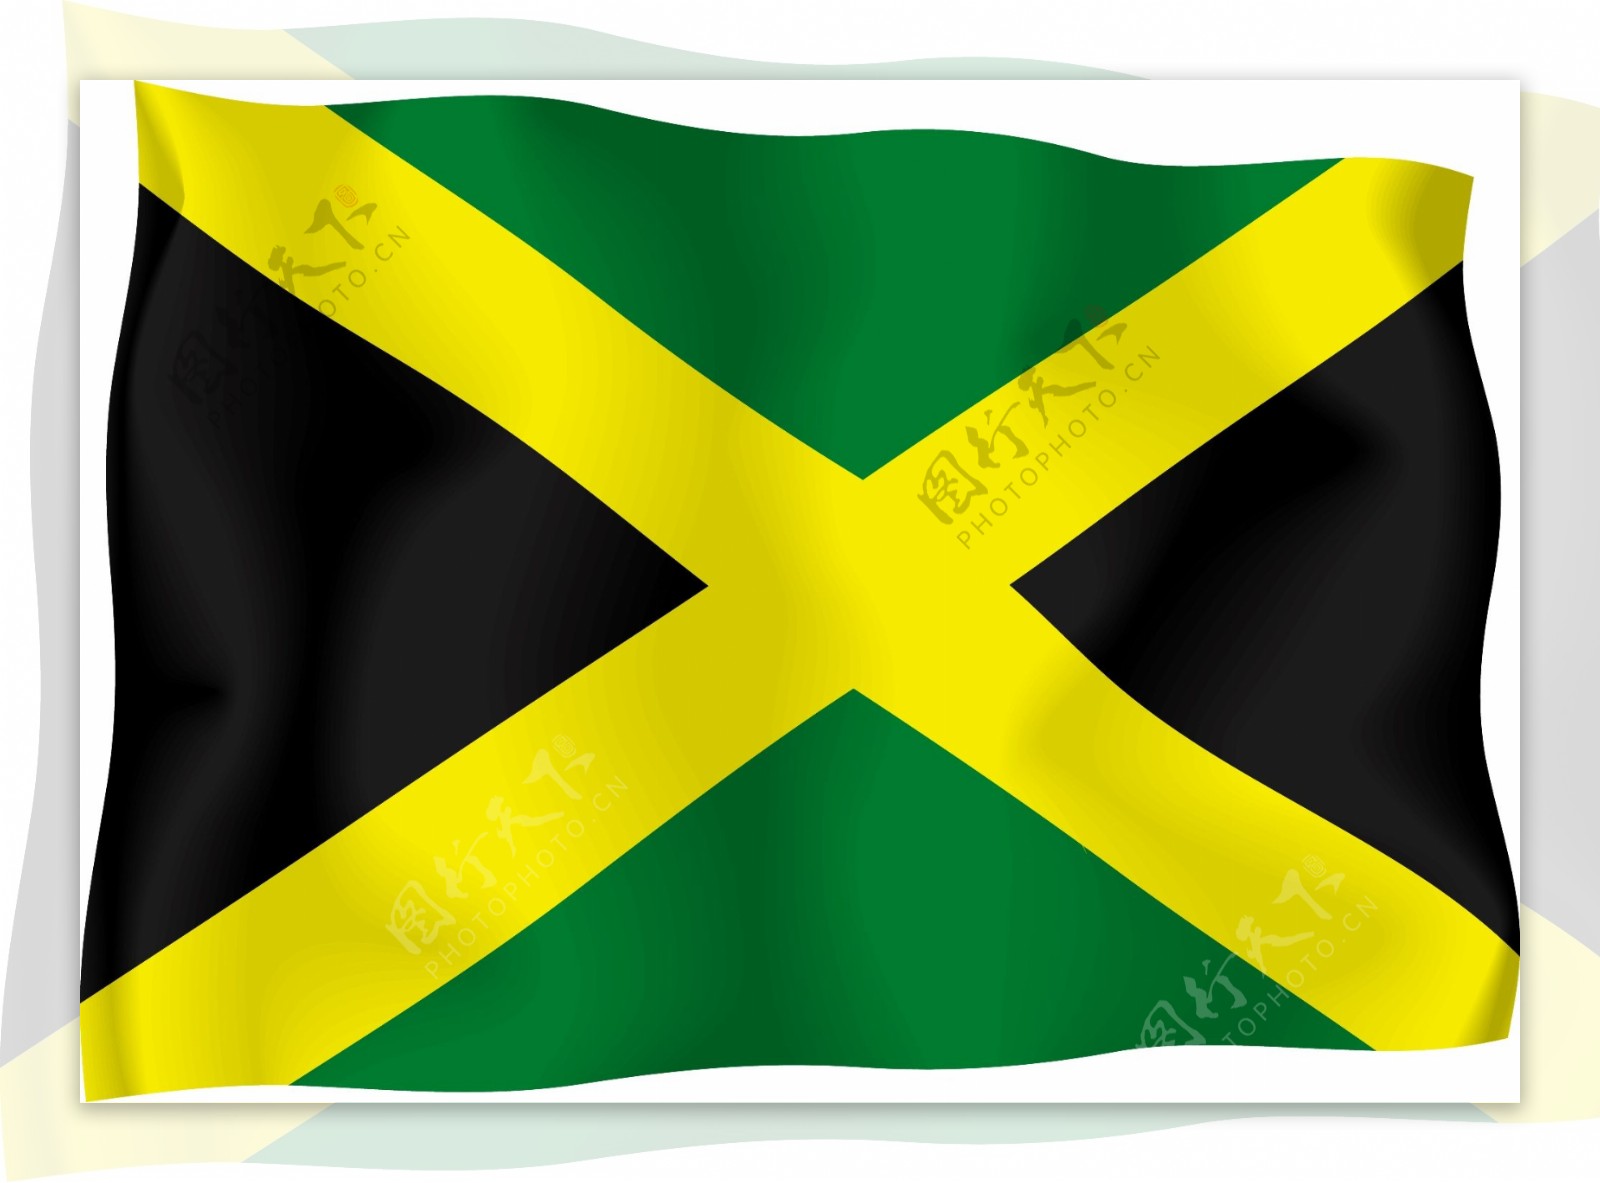 牙买加国旗矢量